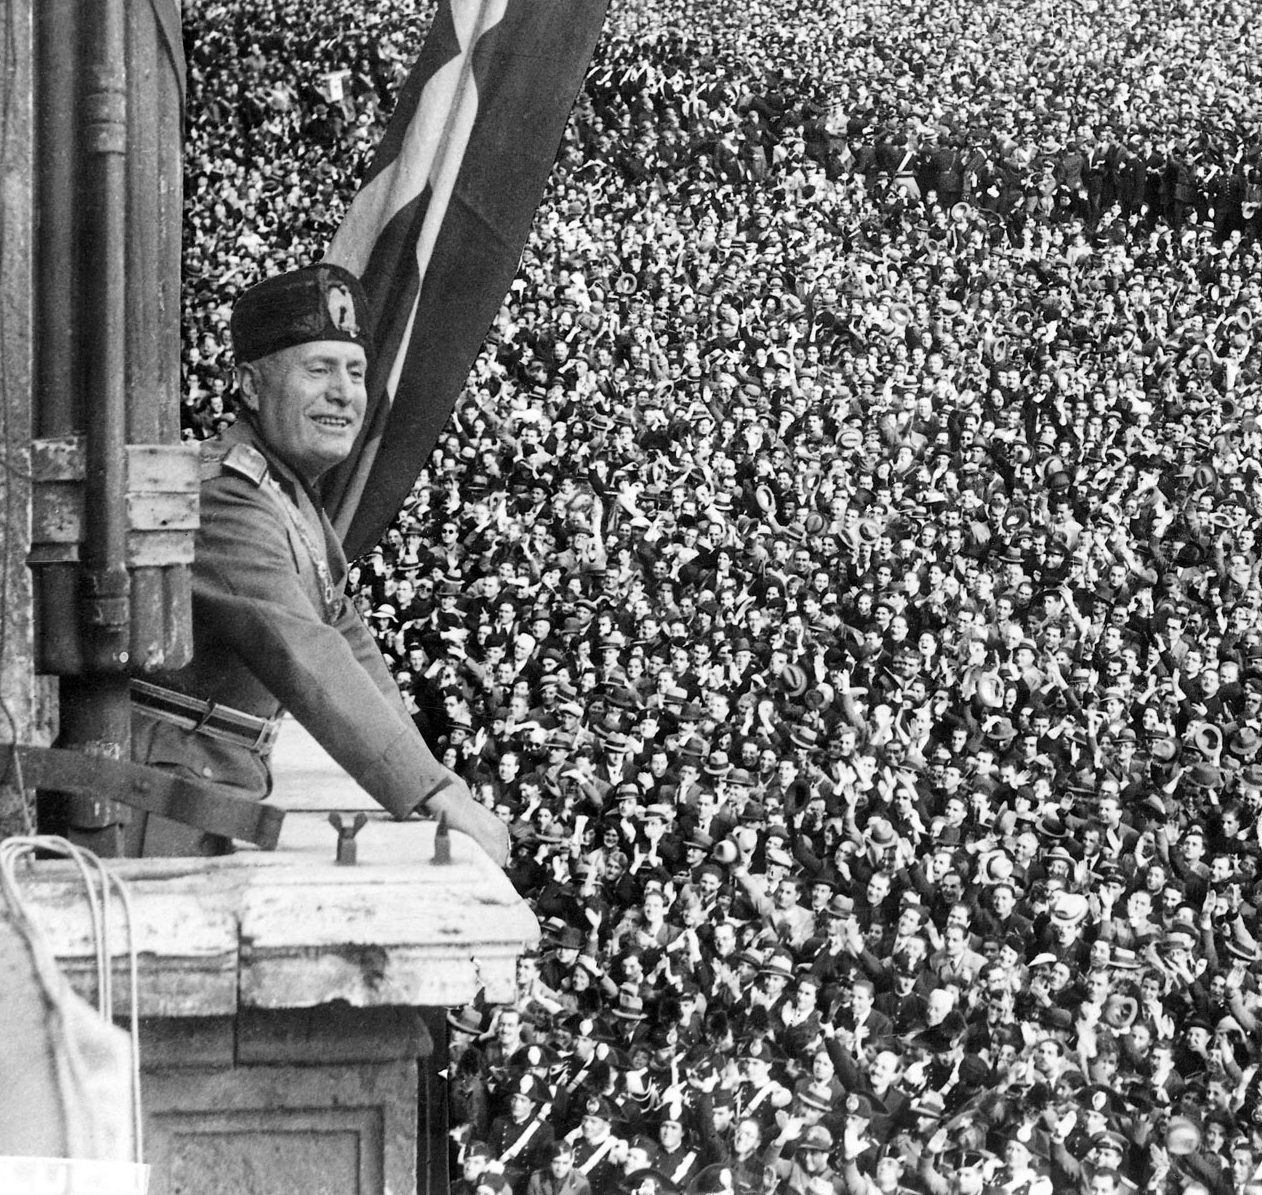 Расстрел в случае поражения, пропаганда фашизма, влияние Муссолини: Каким был САМЫЙ ГРУБЫЙ и ПОЛИТИЗИРОВАННЫЙ ЧМ-1934?